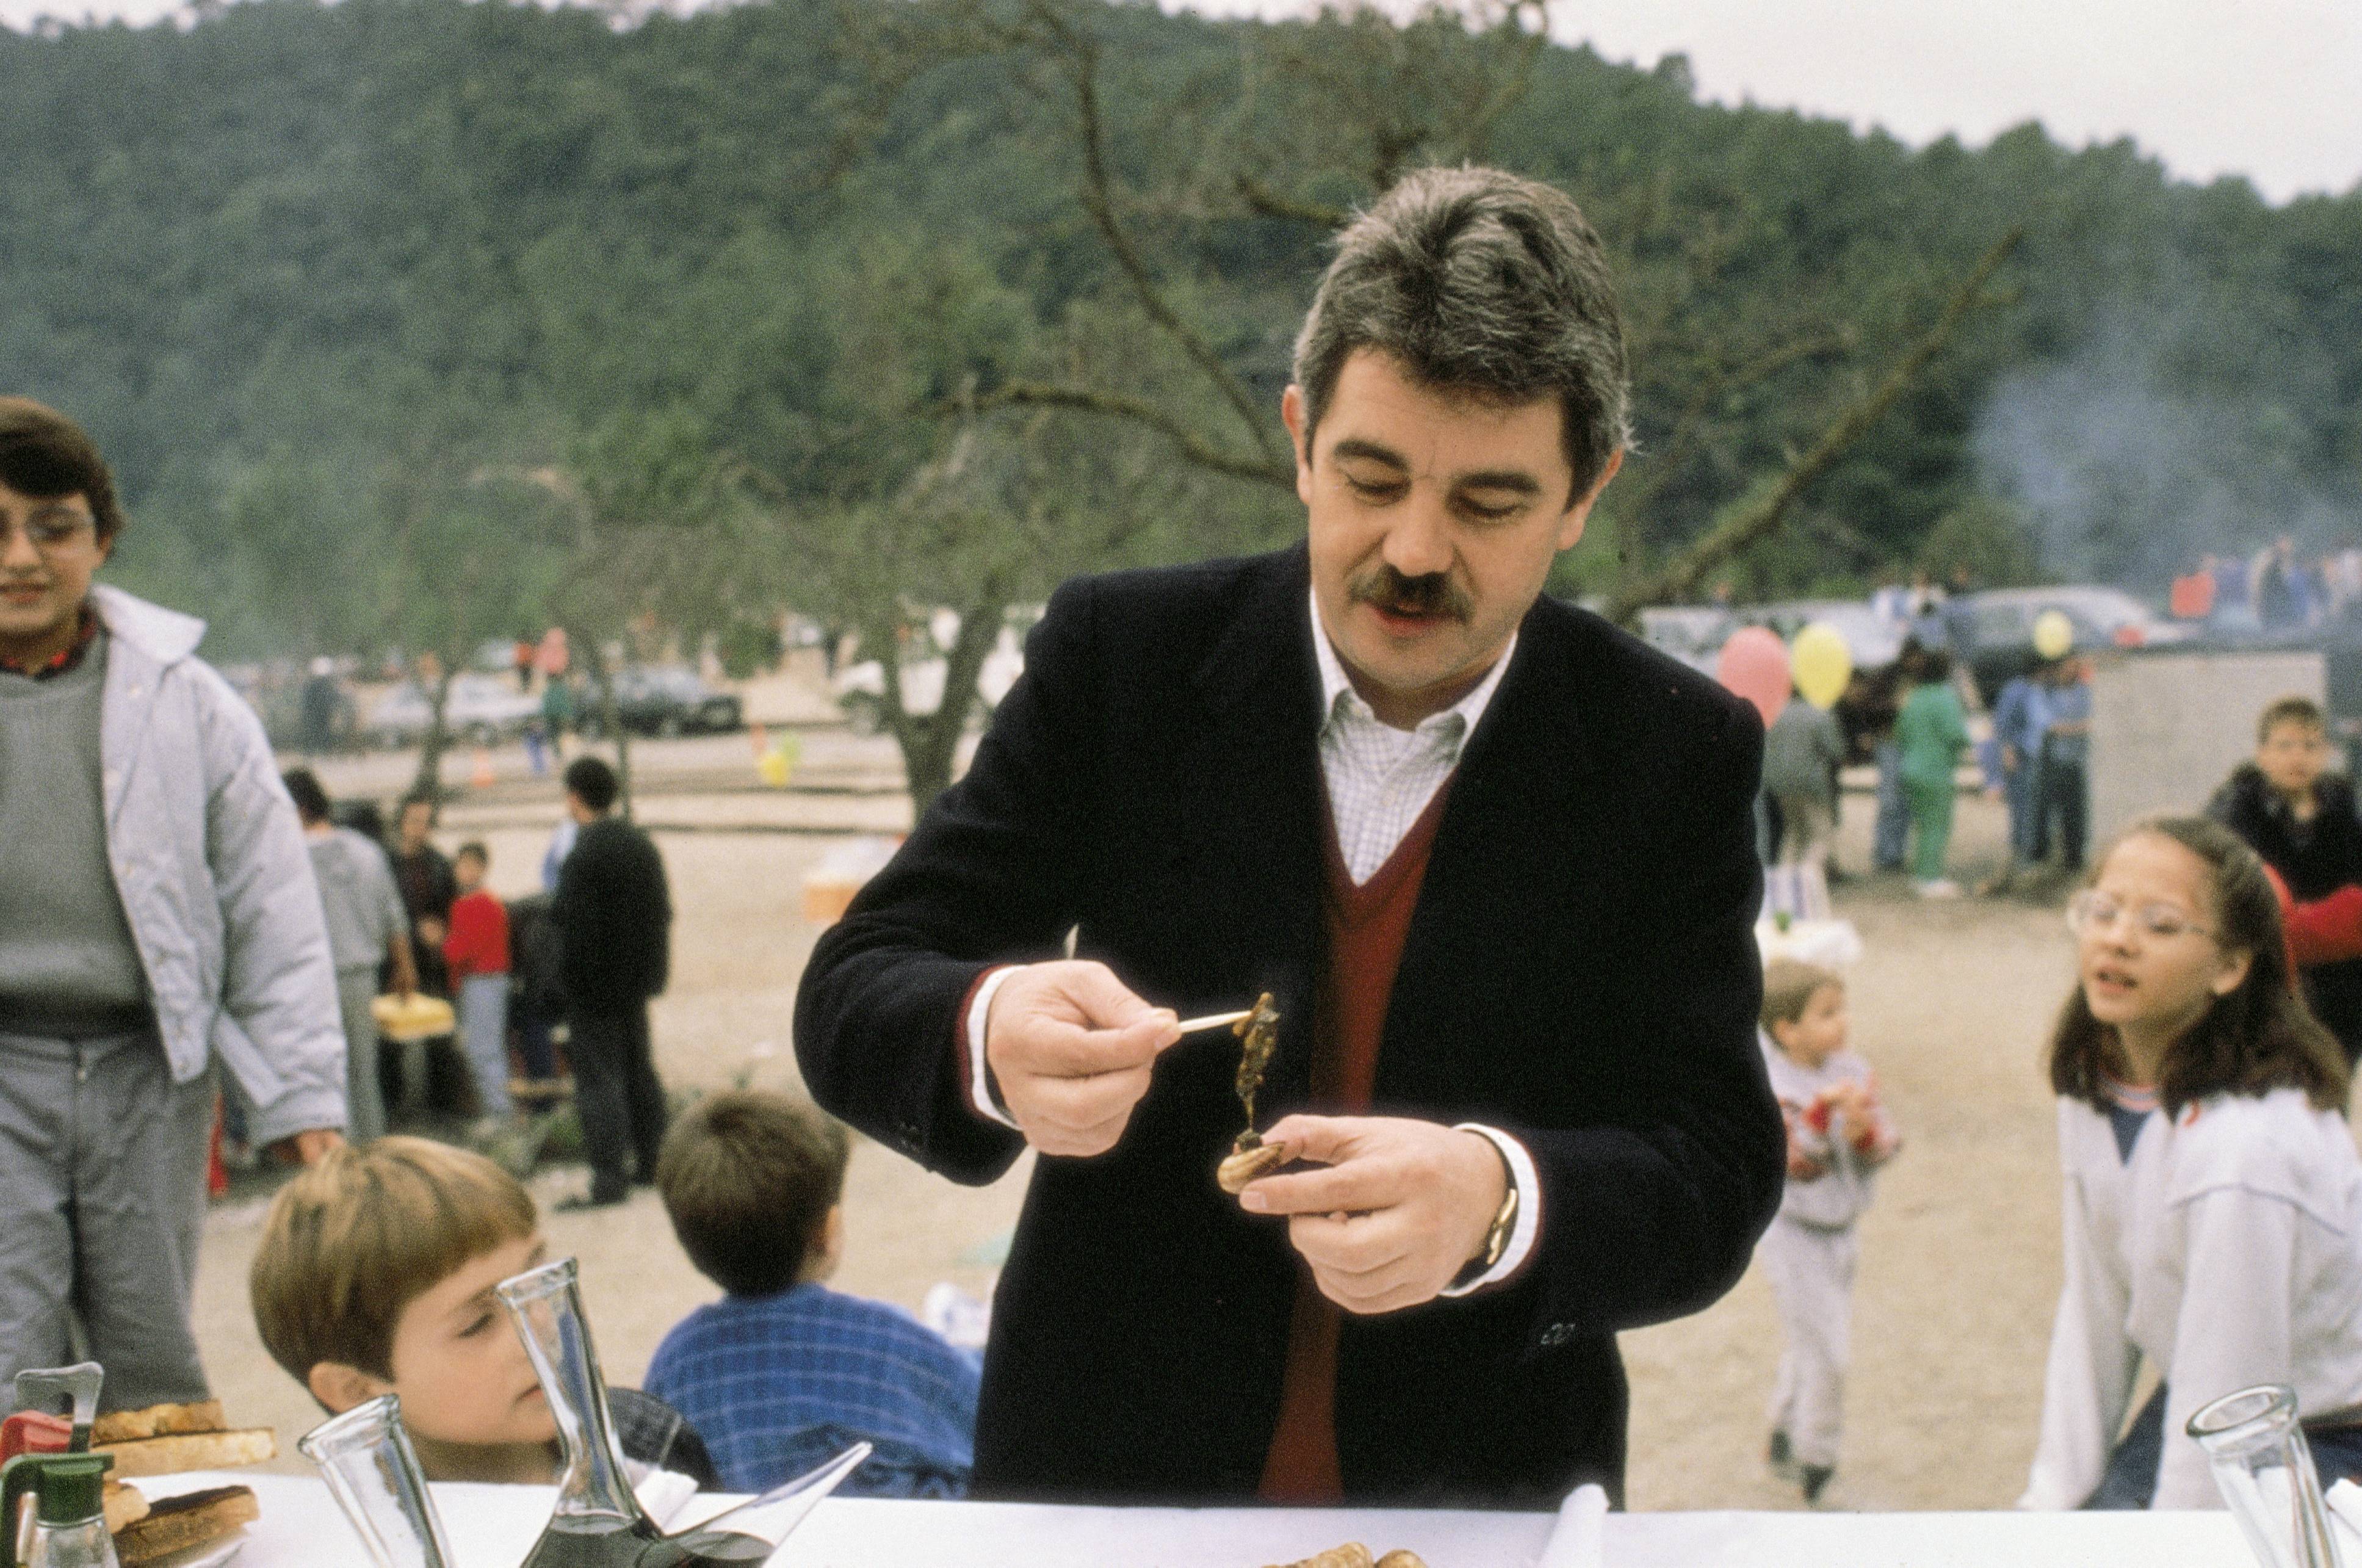 Pasqual Maragall comiendo un pincho en Barcelona, circa 1990. | Foto: Getty Images